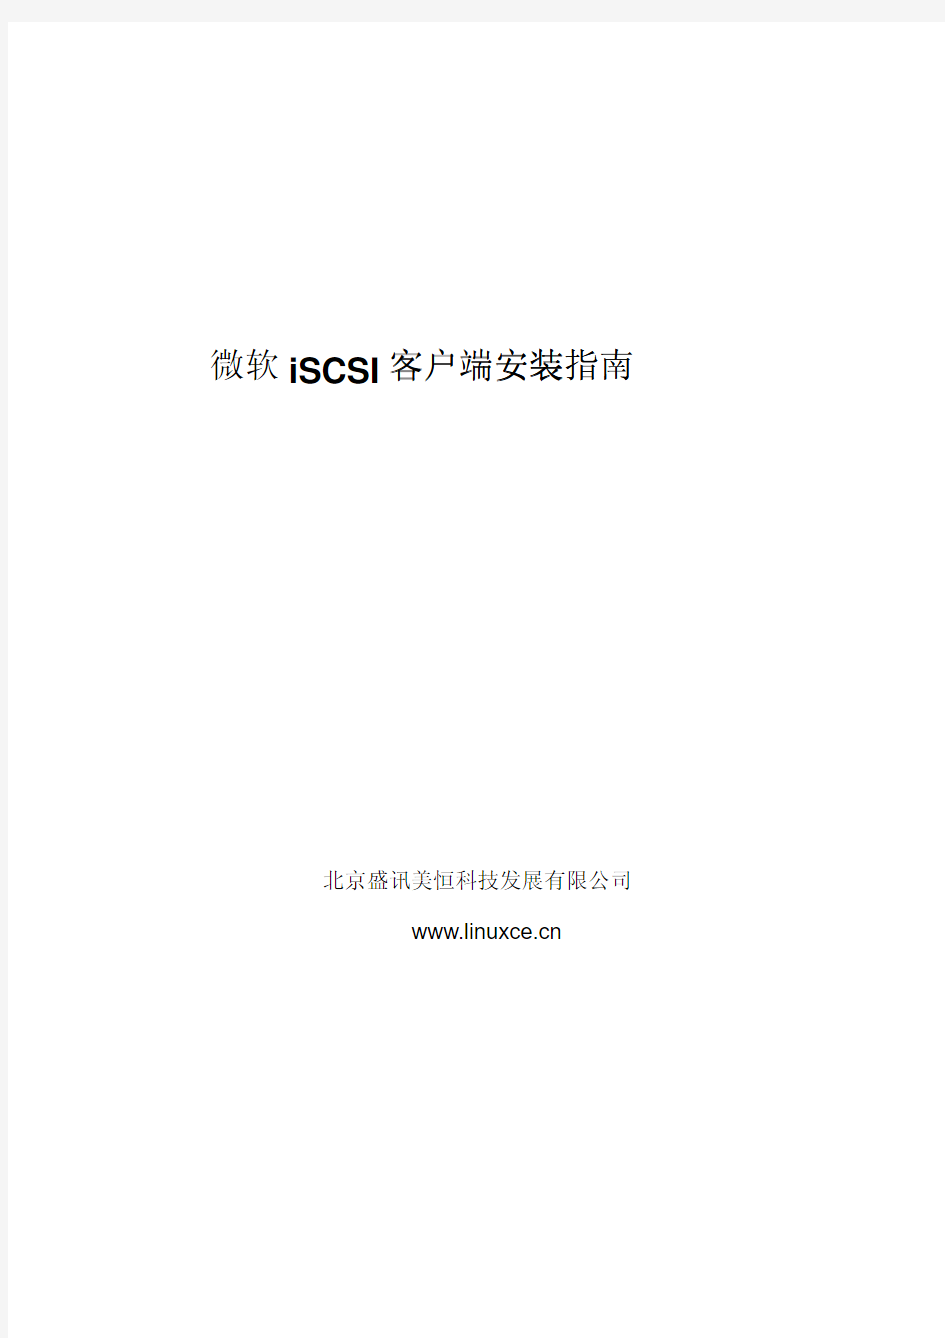 iSCSI_Software_Initiator